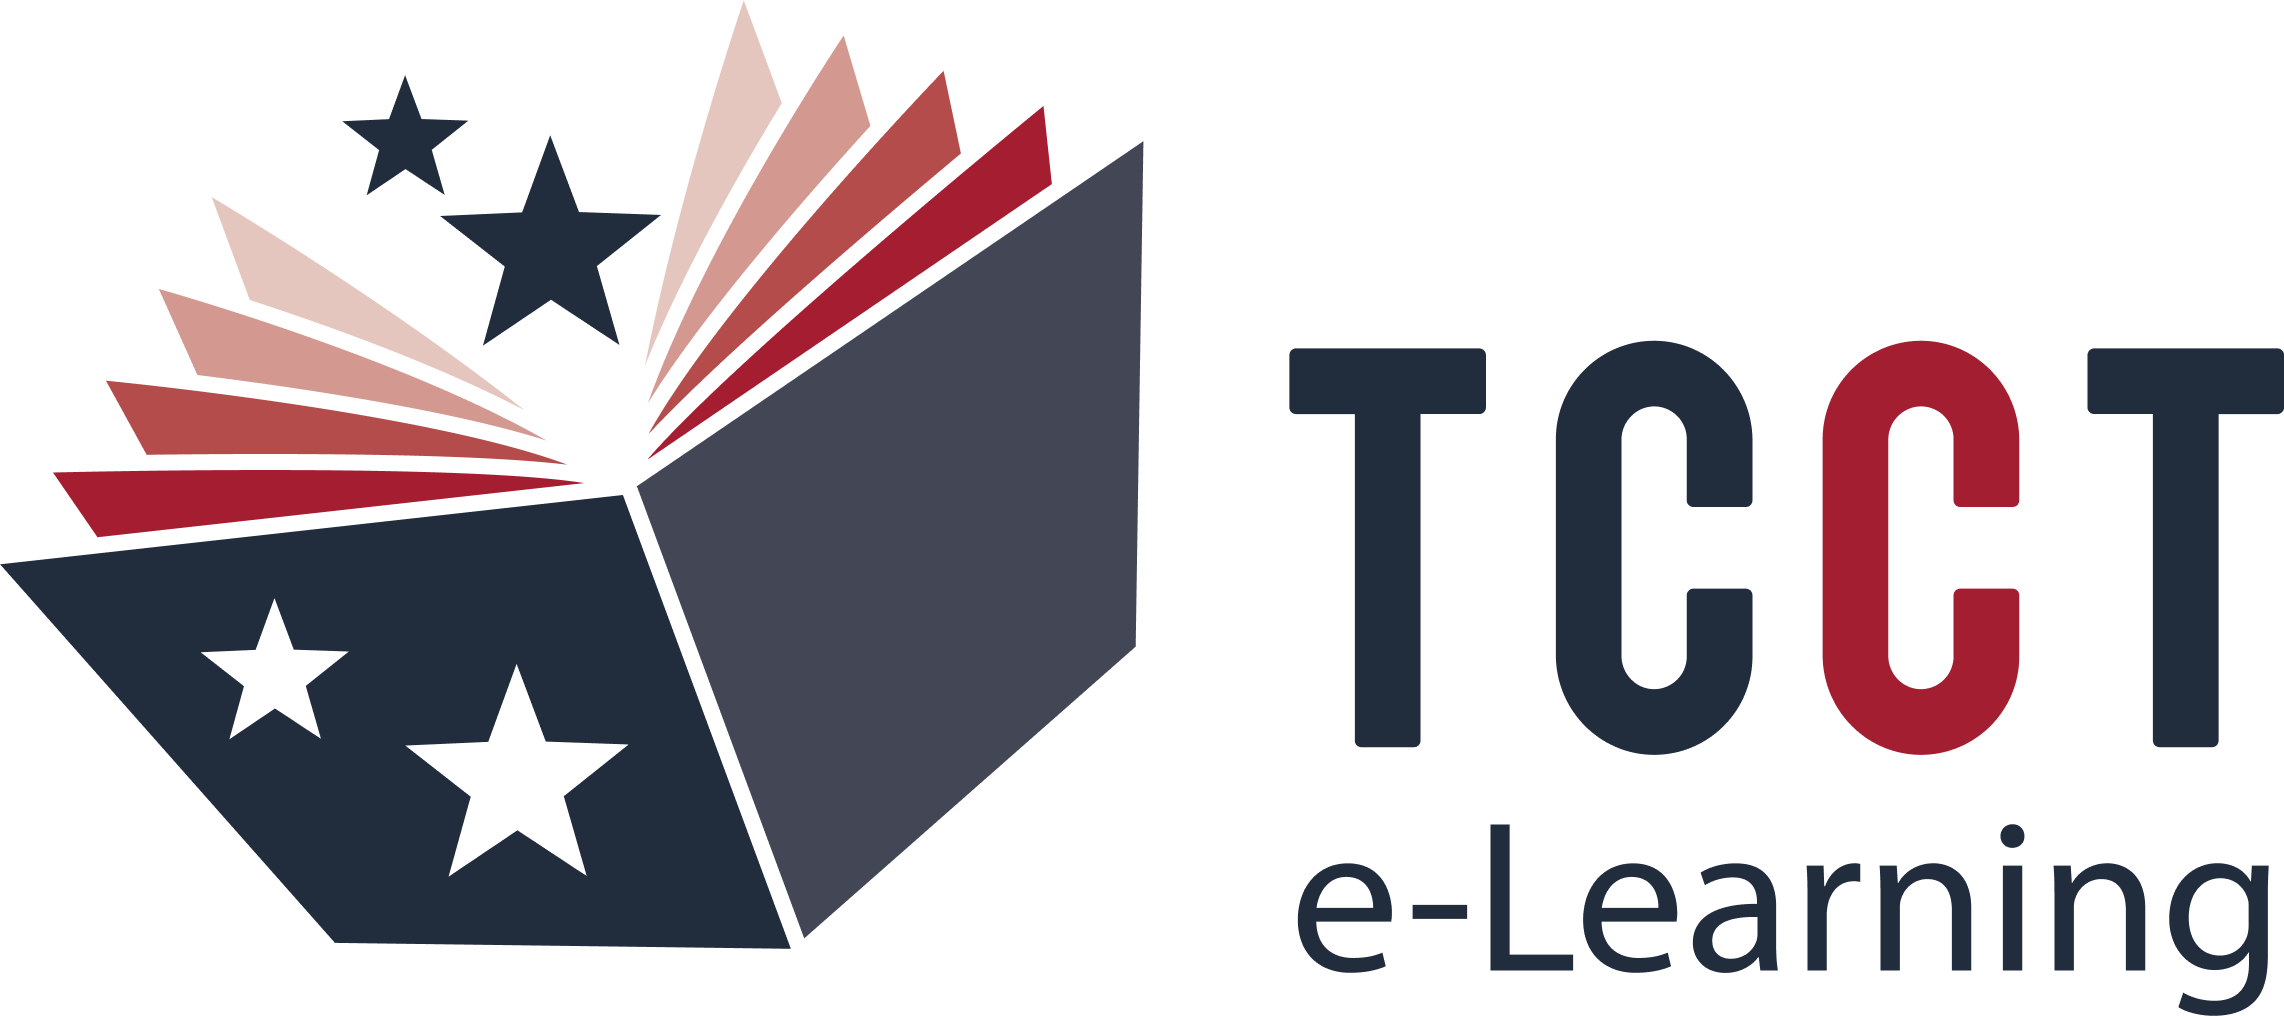 TCCT e-Learning